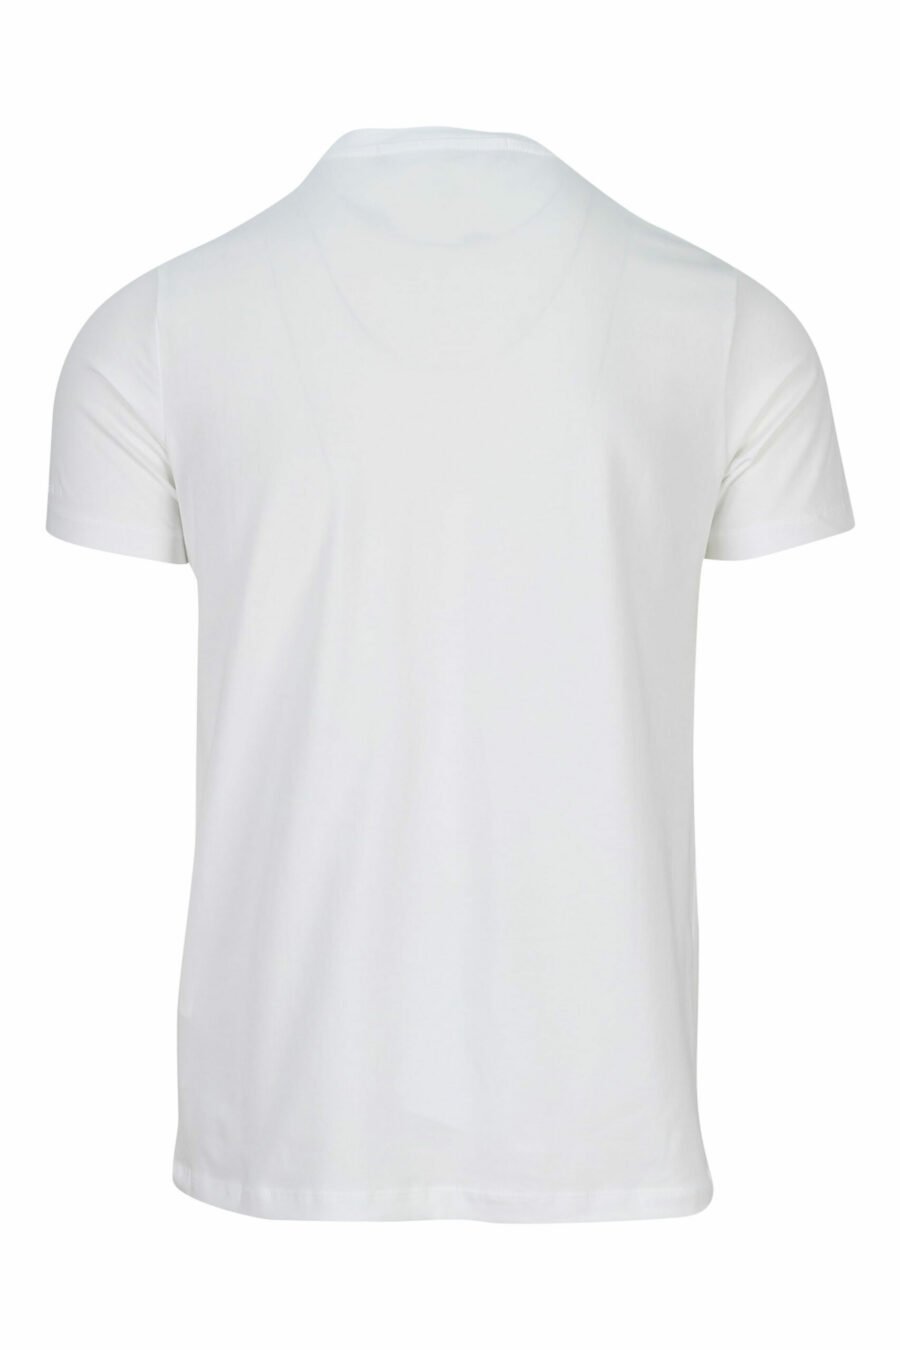 White T-shirt with monochrome rubberised maxilogo - 4062226401180 1 scaled